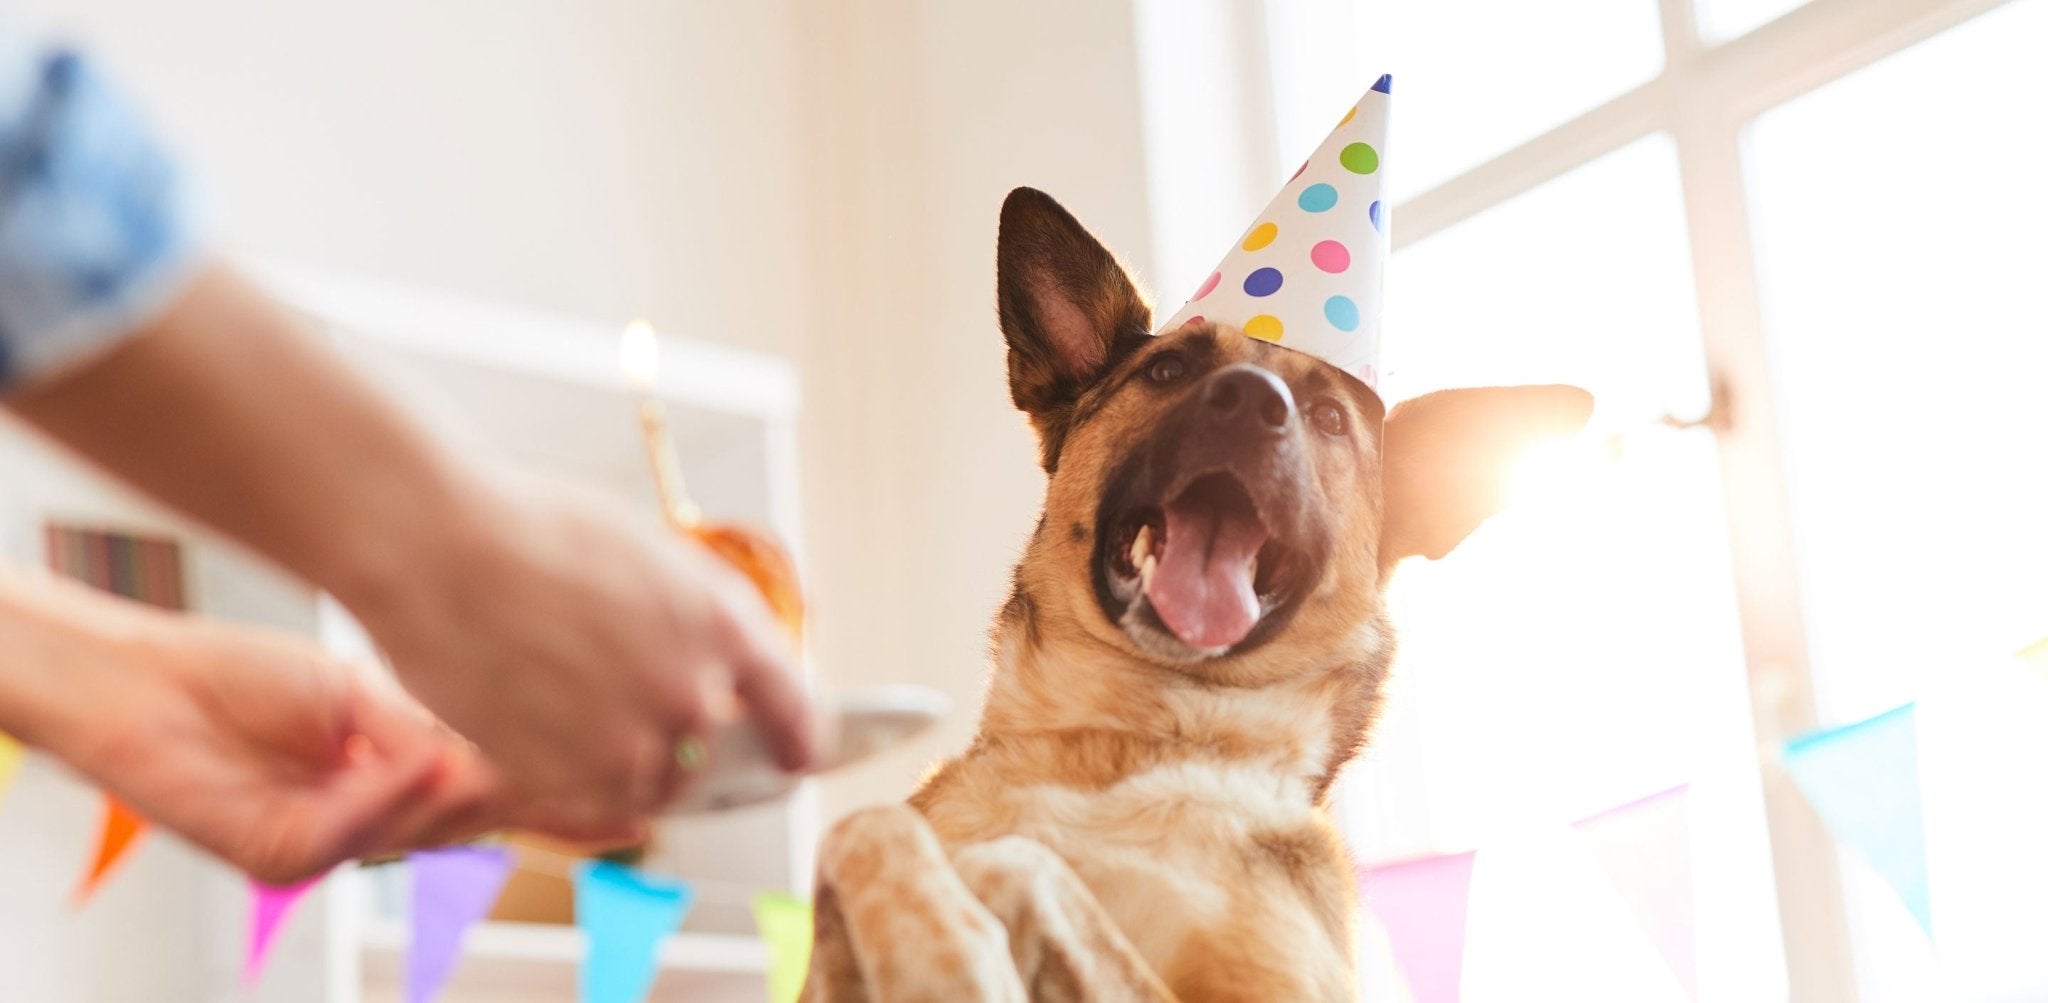 Geburtstagsgeschenke für Hundebesitzer - Infinity Paws